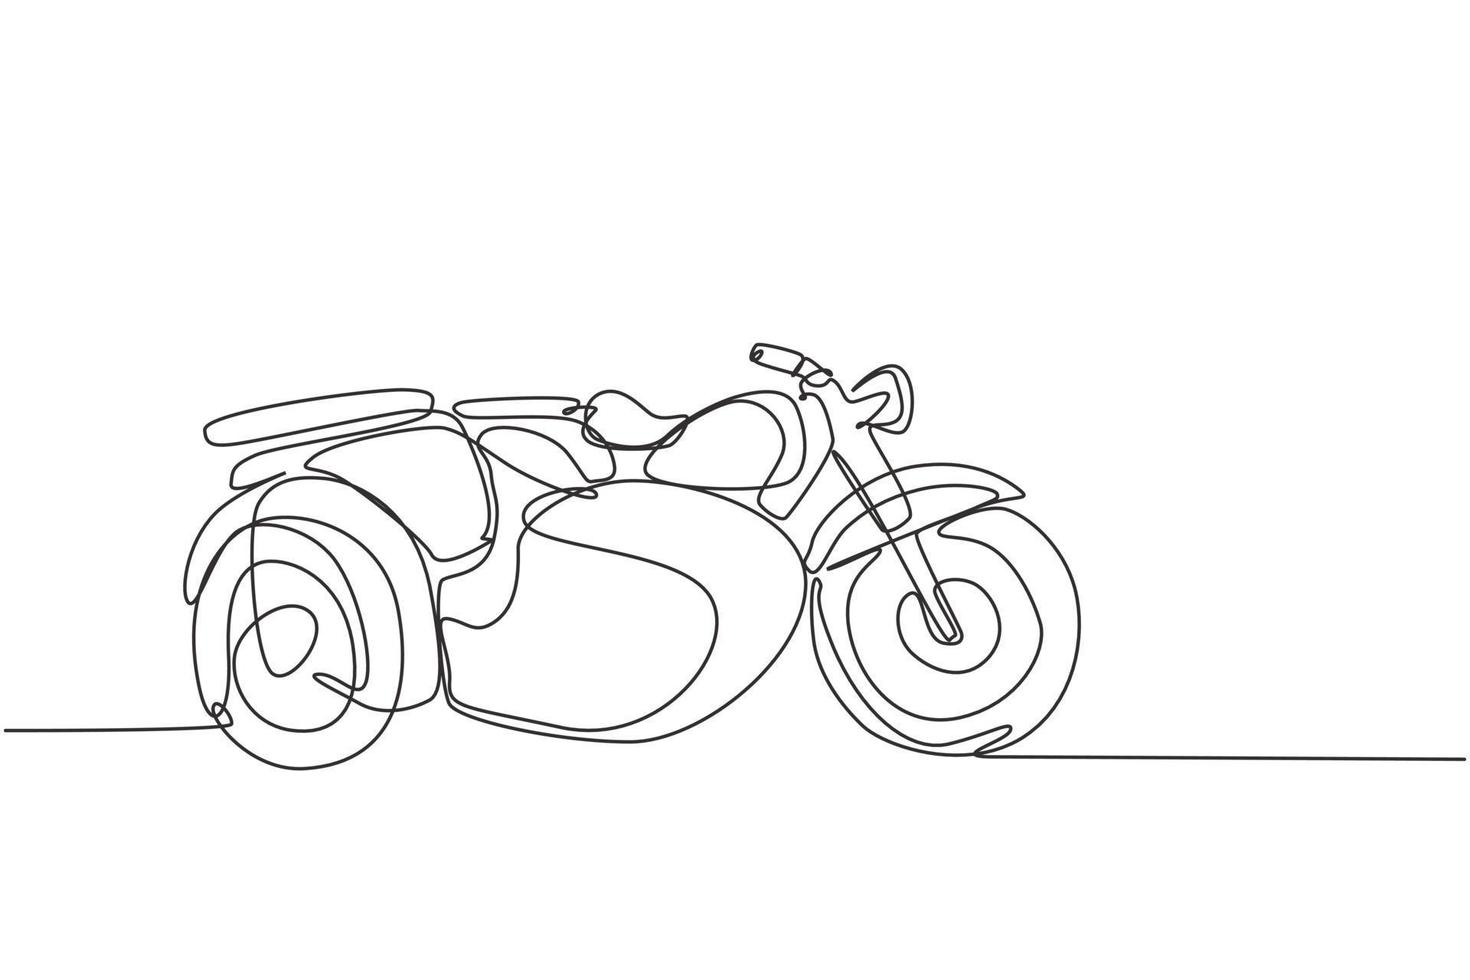 een doorlopende lijntekening van retro oude vintage motorfiets met zijspan. klassieke motor transport concept enkele lijn tekenen grafisch ontwerp vectorillustratie vector